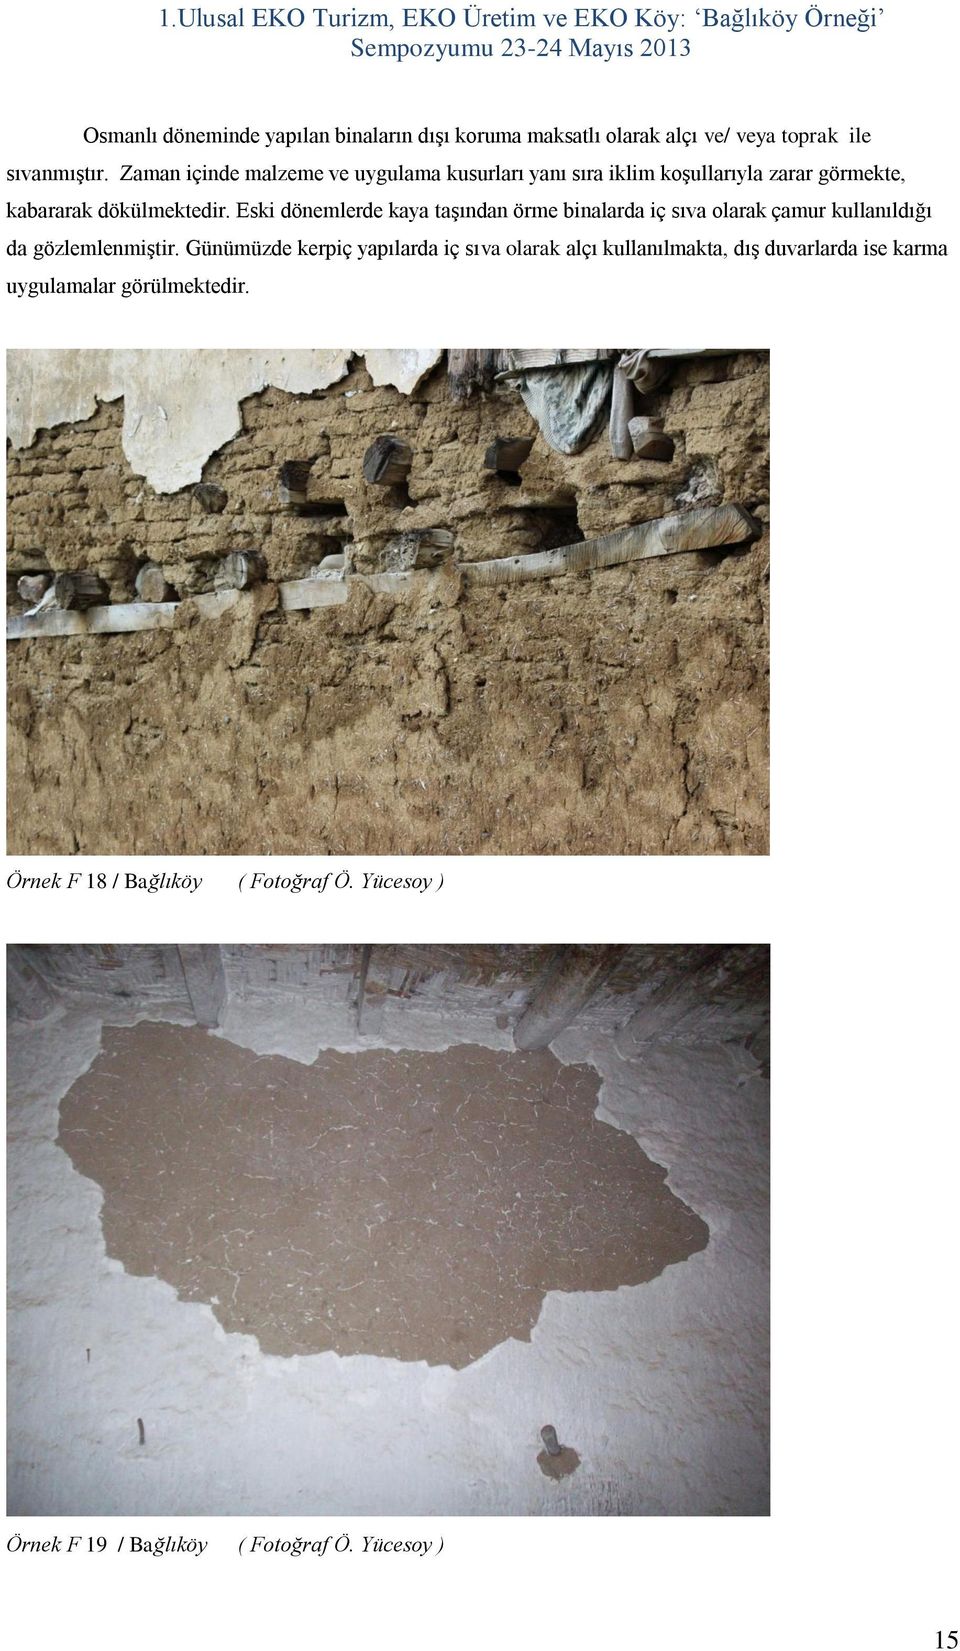 Eski dönemlerde kaya taşından örme binalarda iç sıva olarak çamur kullanıldığı da gözlemlenmiştir.